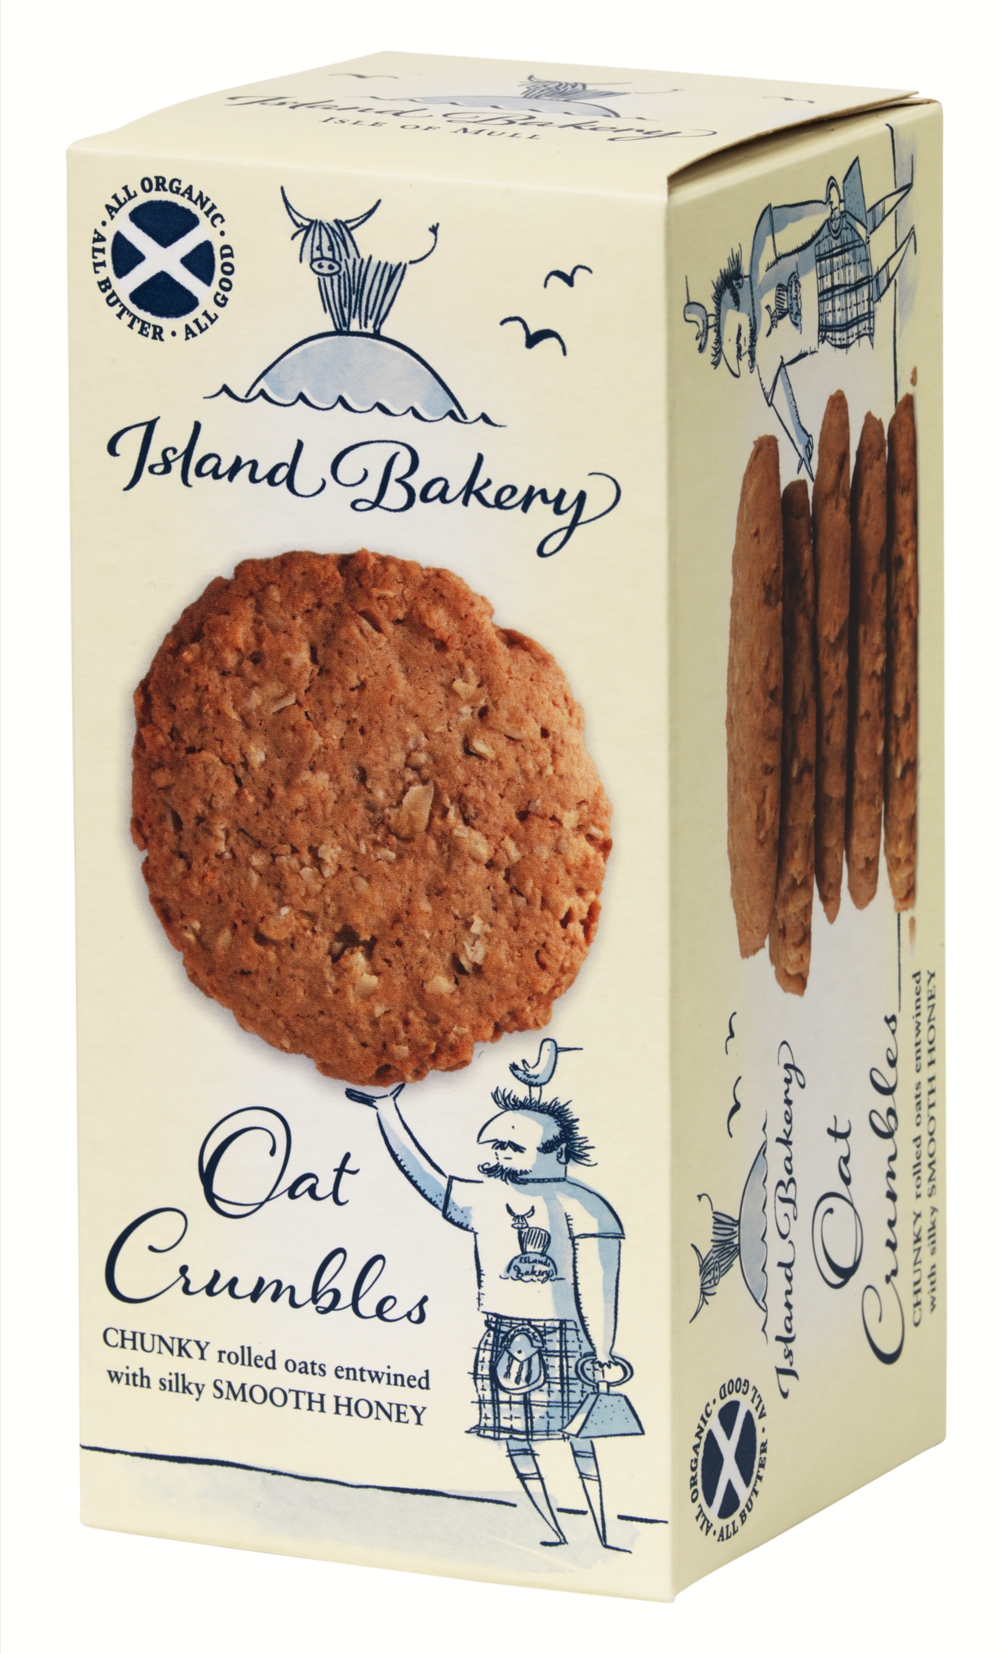 Biscuits à la pomme et à la cannelle, façon crumble Island Bakerybiscuits écossais